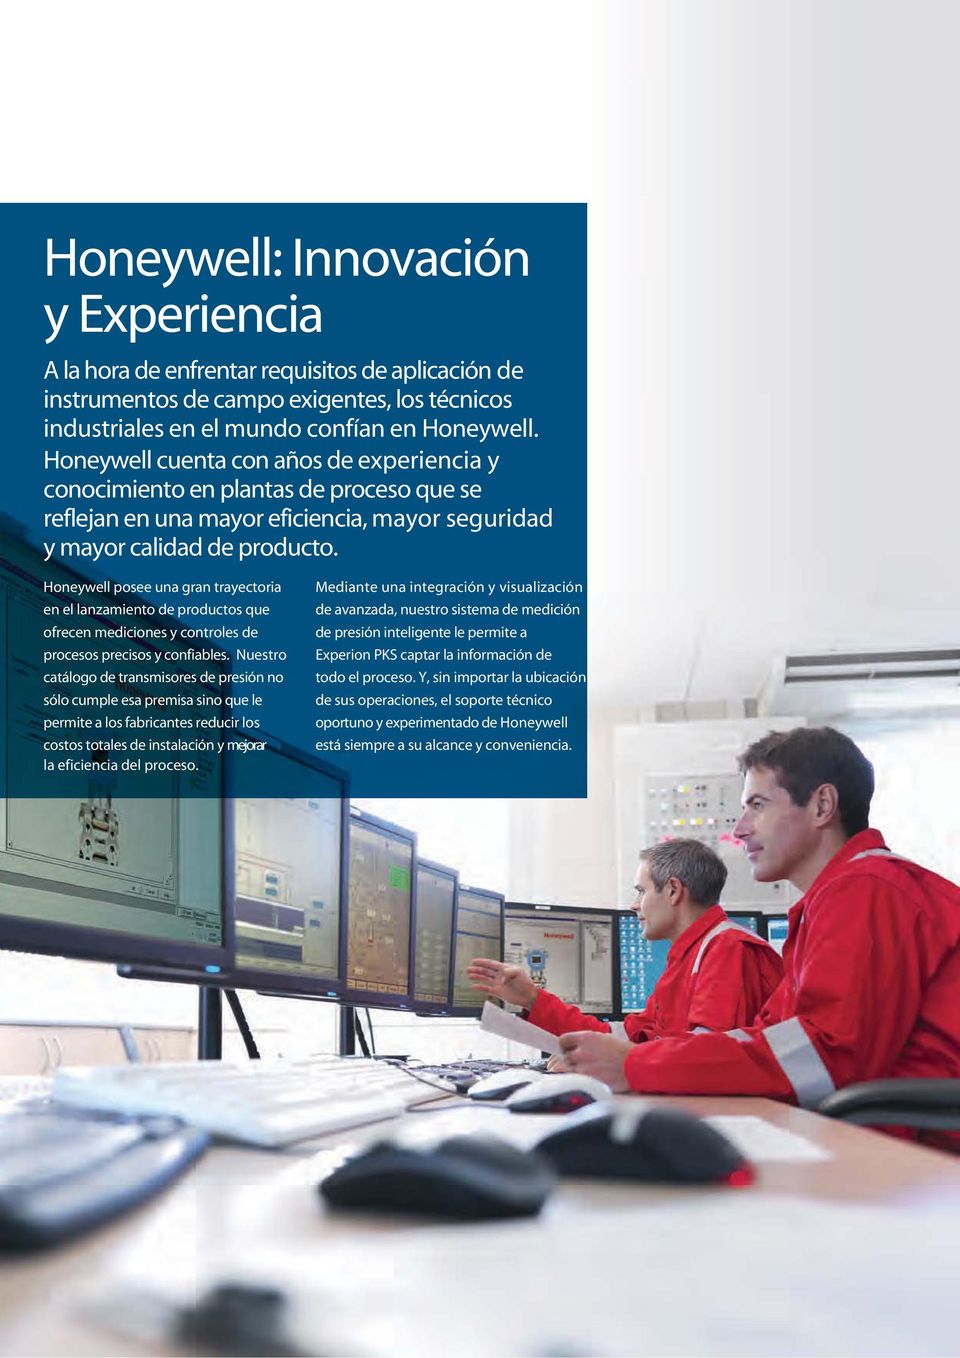 Honeywell posee una gran trayectoria en el lanzamiento de productos que ofrecen mediciones y controles de procesos precisos y confiables.